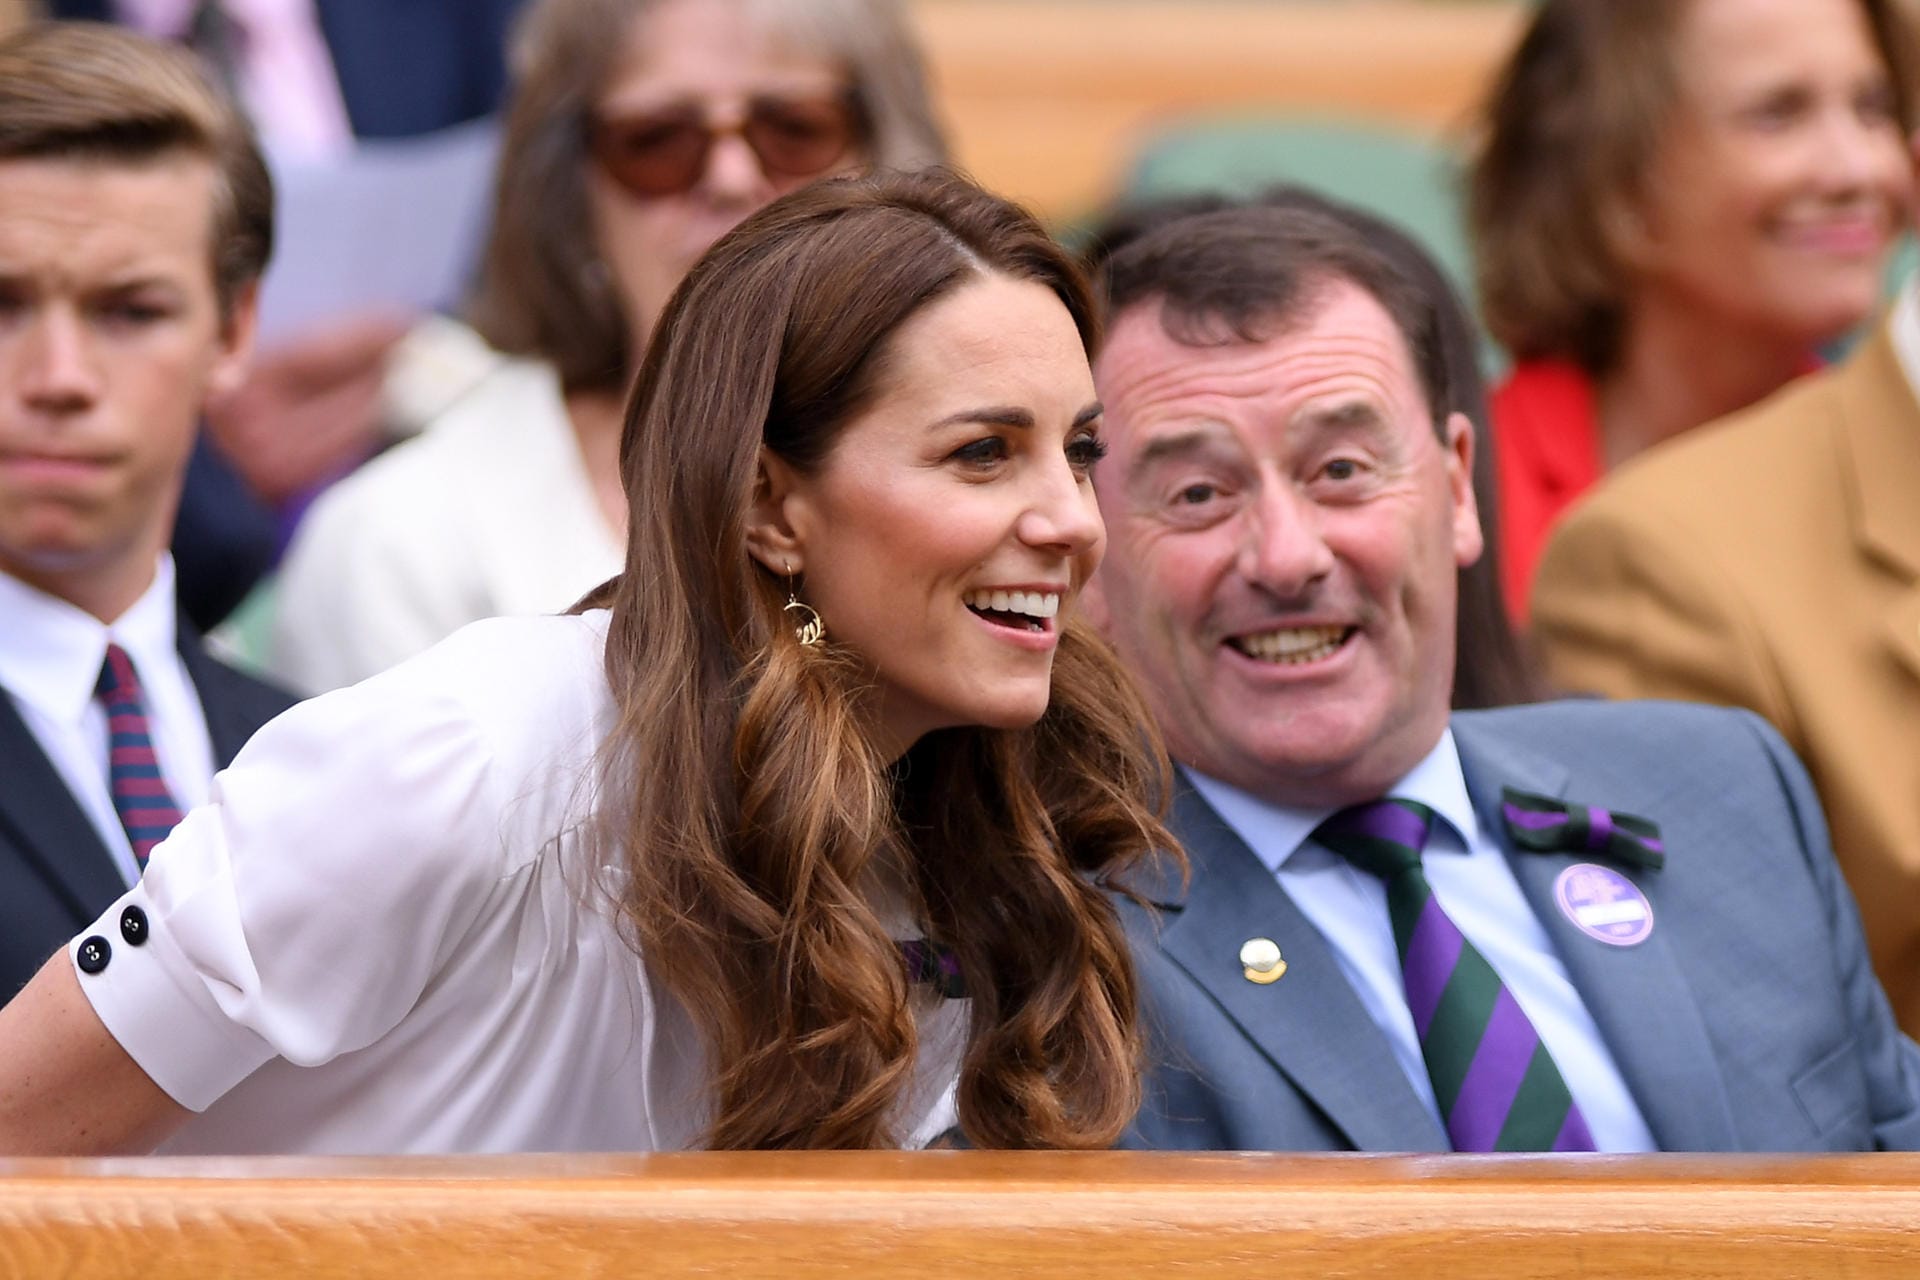 Später nahm sie in der Royal Box platz. Unterhielt sich dort mit dem Wimbledon-Vorsitzenden Philip Brook.